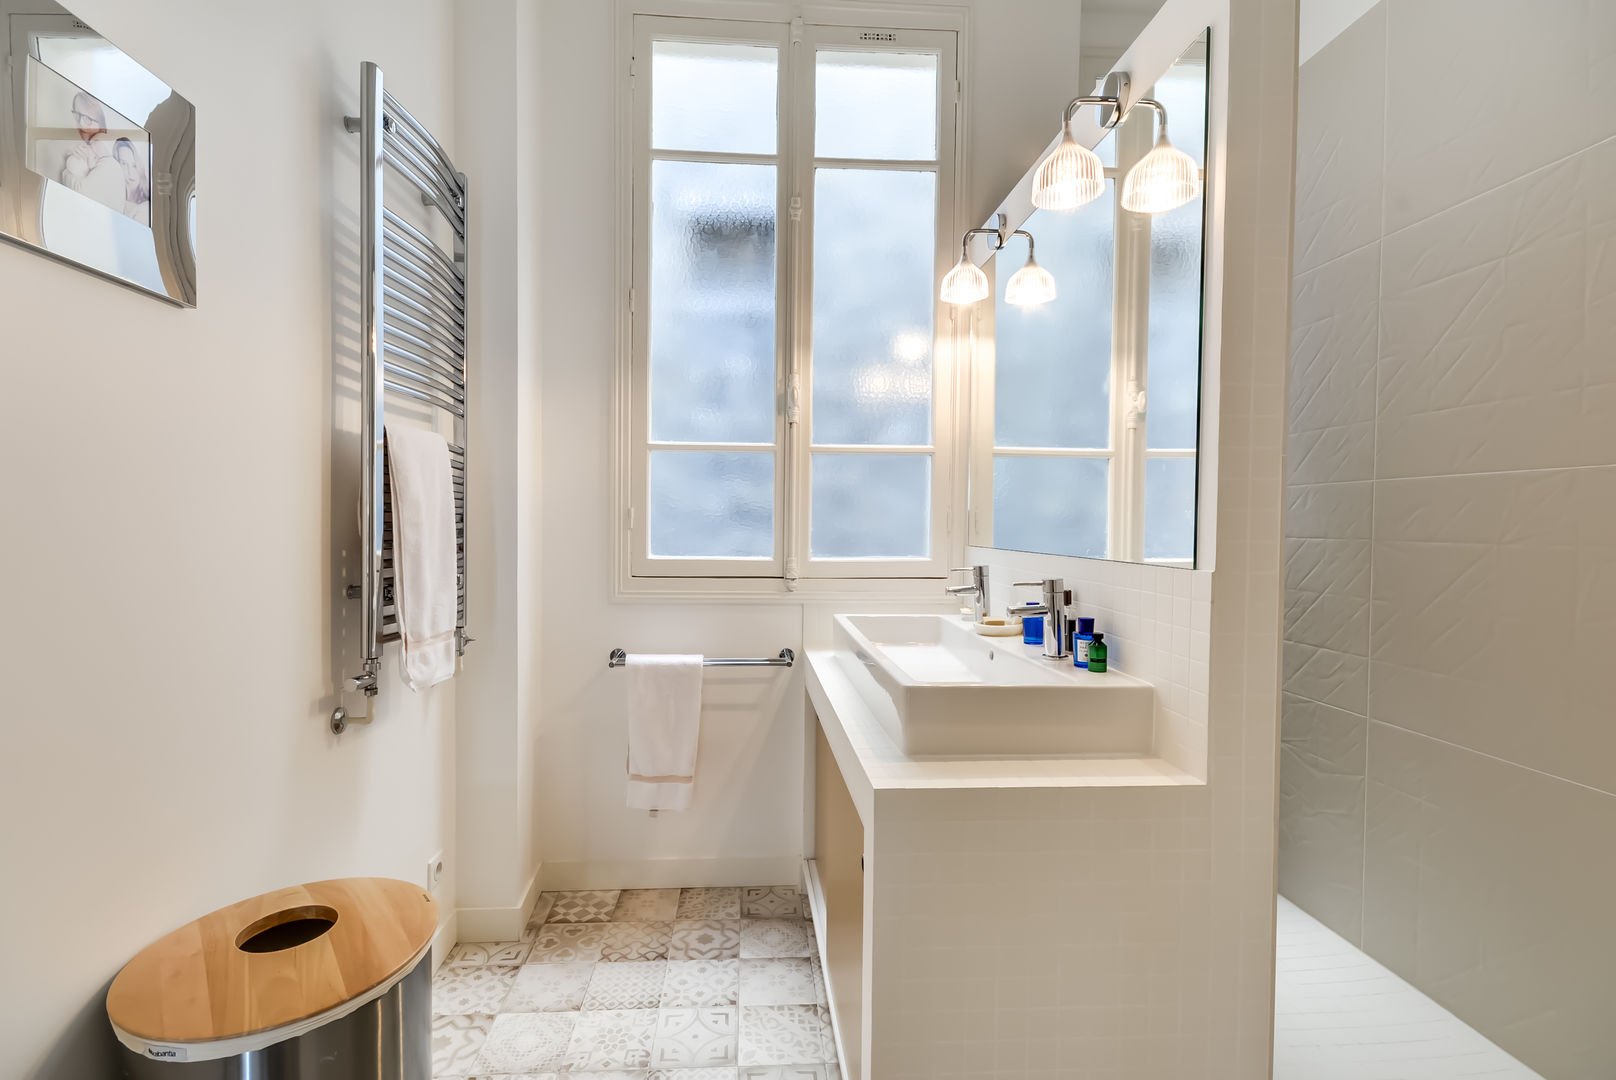 Un appartement haussmanien revisité - Paris 16e, ATELIER FB ATELIER FB Baños de estilo moderno